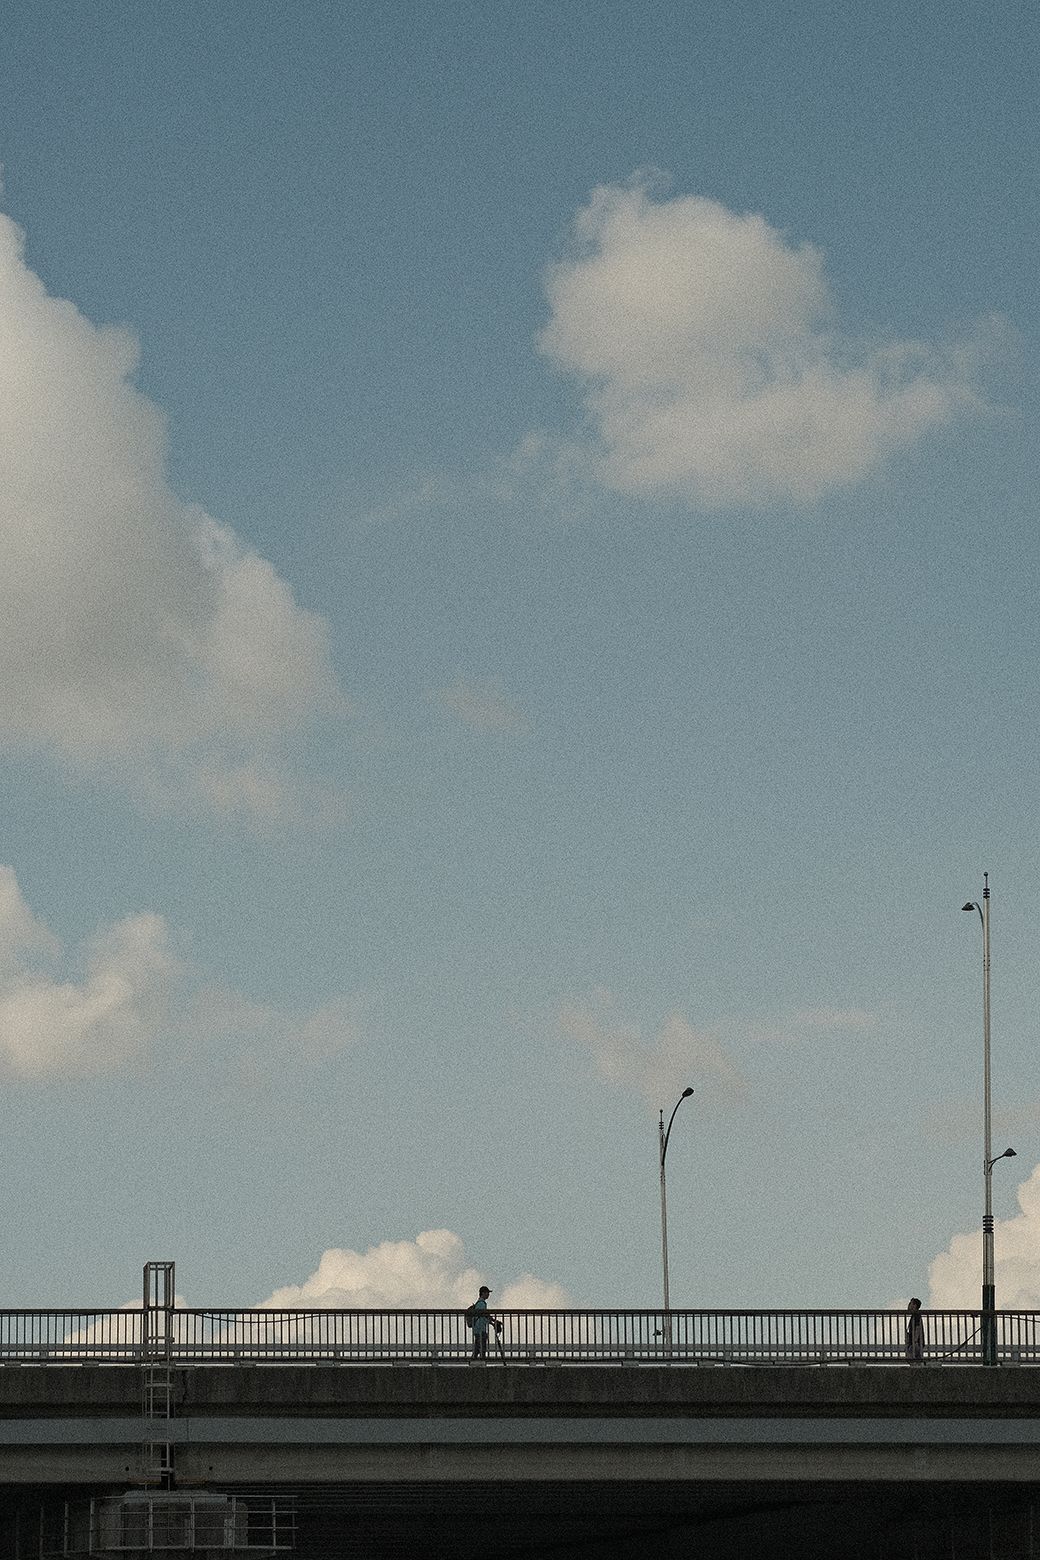 커다란 흰 구름을 배경으로 다리 위를 전동 킥보드를 타고 지나가는 사람의 모습